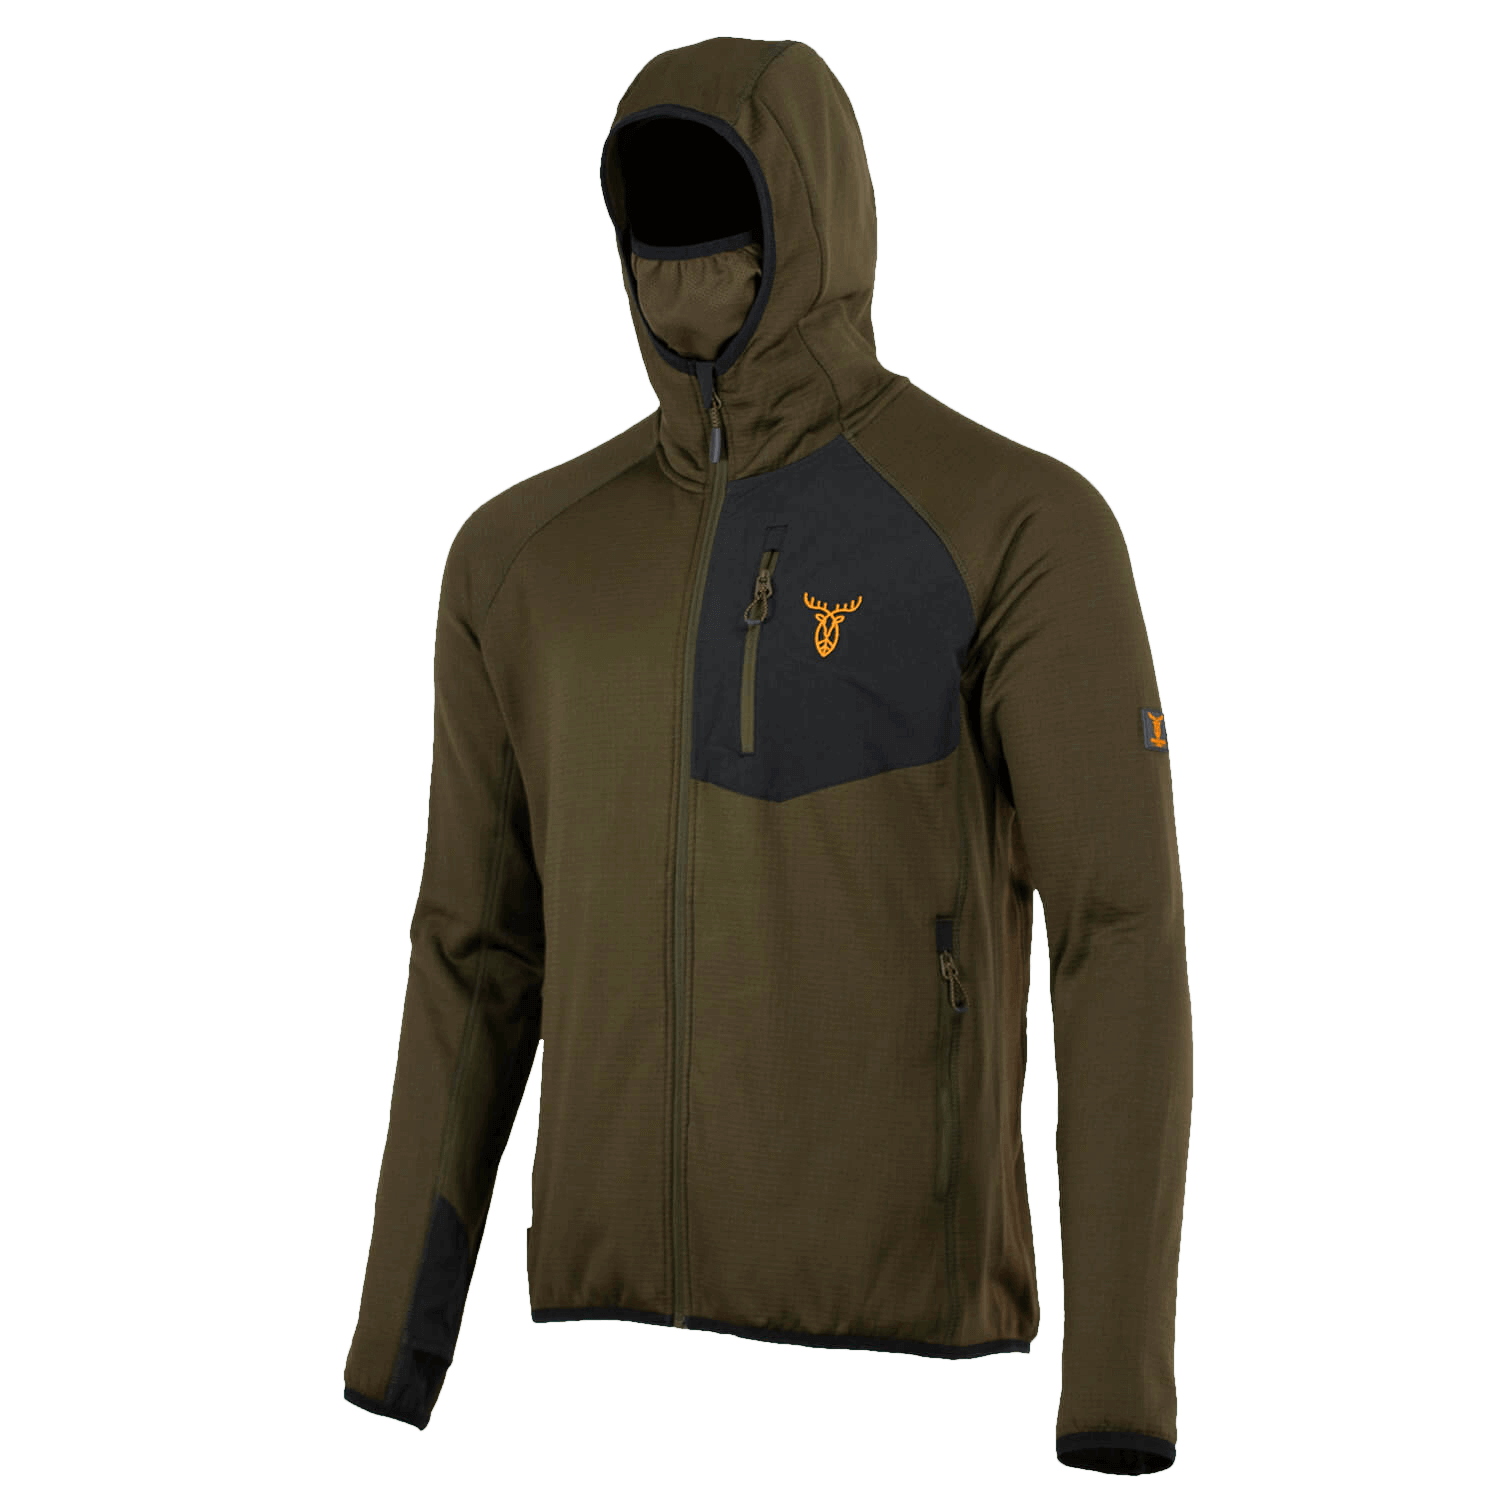  Pirscher Gear Tech fleece hoodie